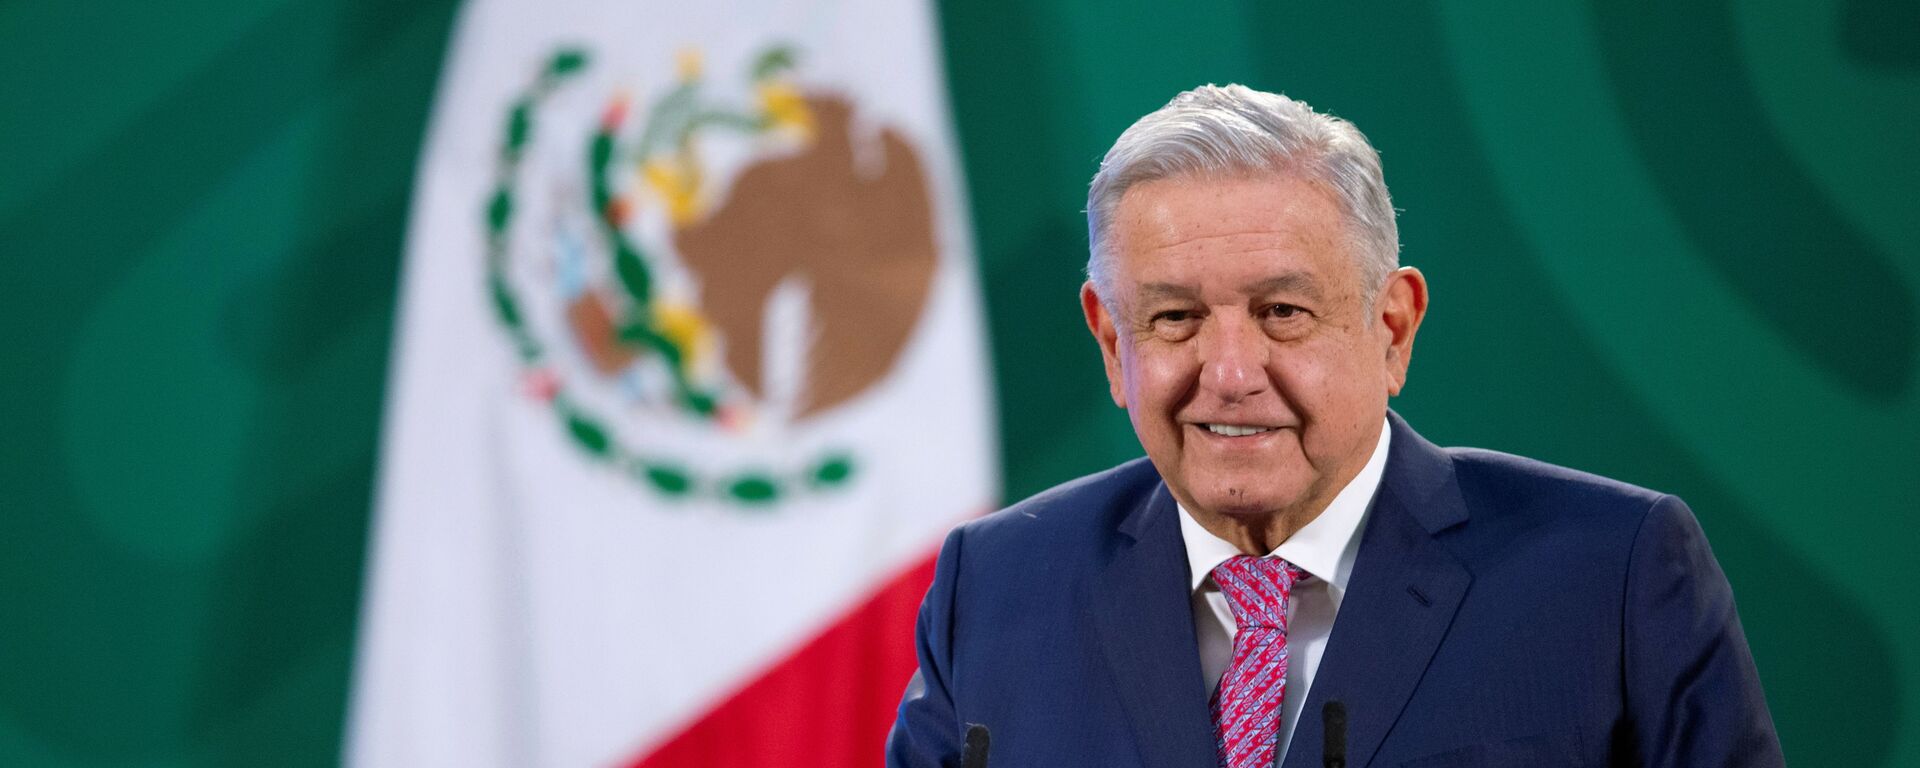 Andrés Manuel López Obrador, presidente de México - Sputnik Mundo, 1920, 09.02.2021